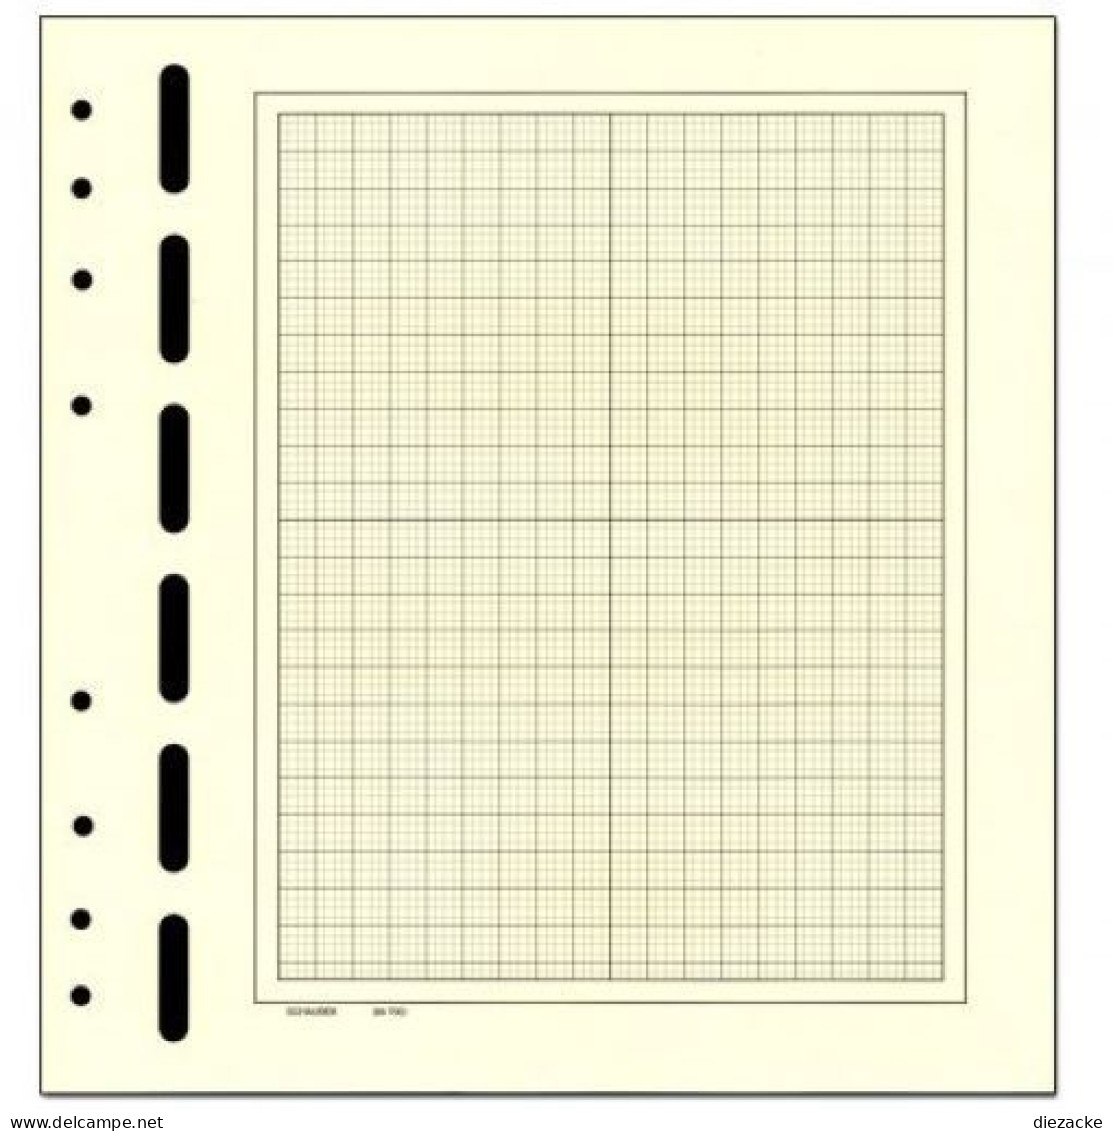 Schaubek Blankoblätter Bb710 Gelblich-weiß Mit Schwarzem Netzdruck 50 Blatt Neu ( - Blank Pages